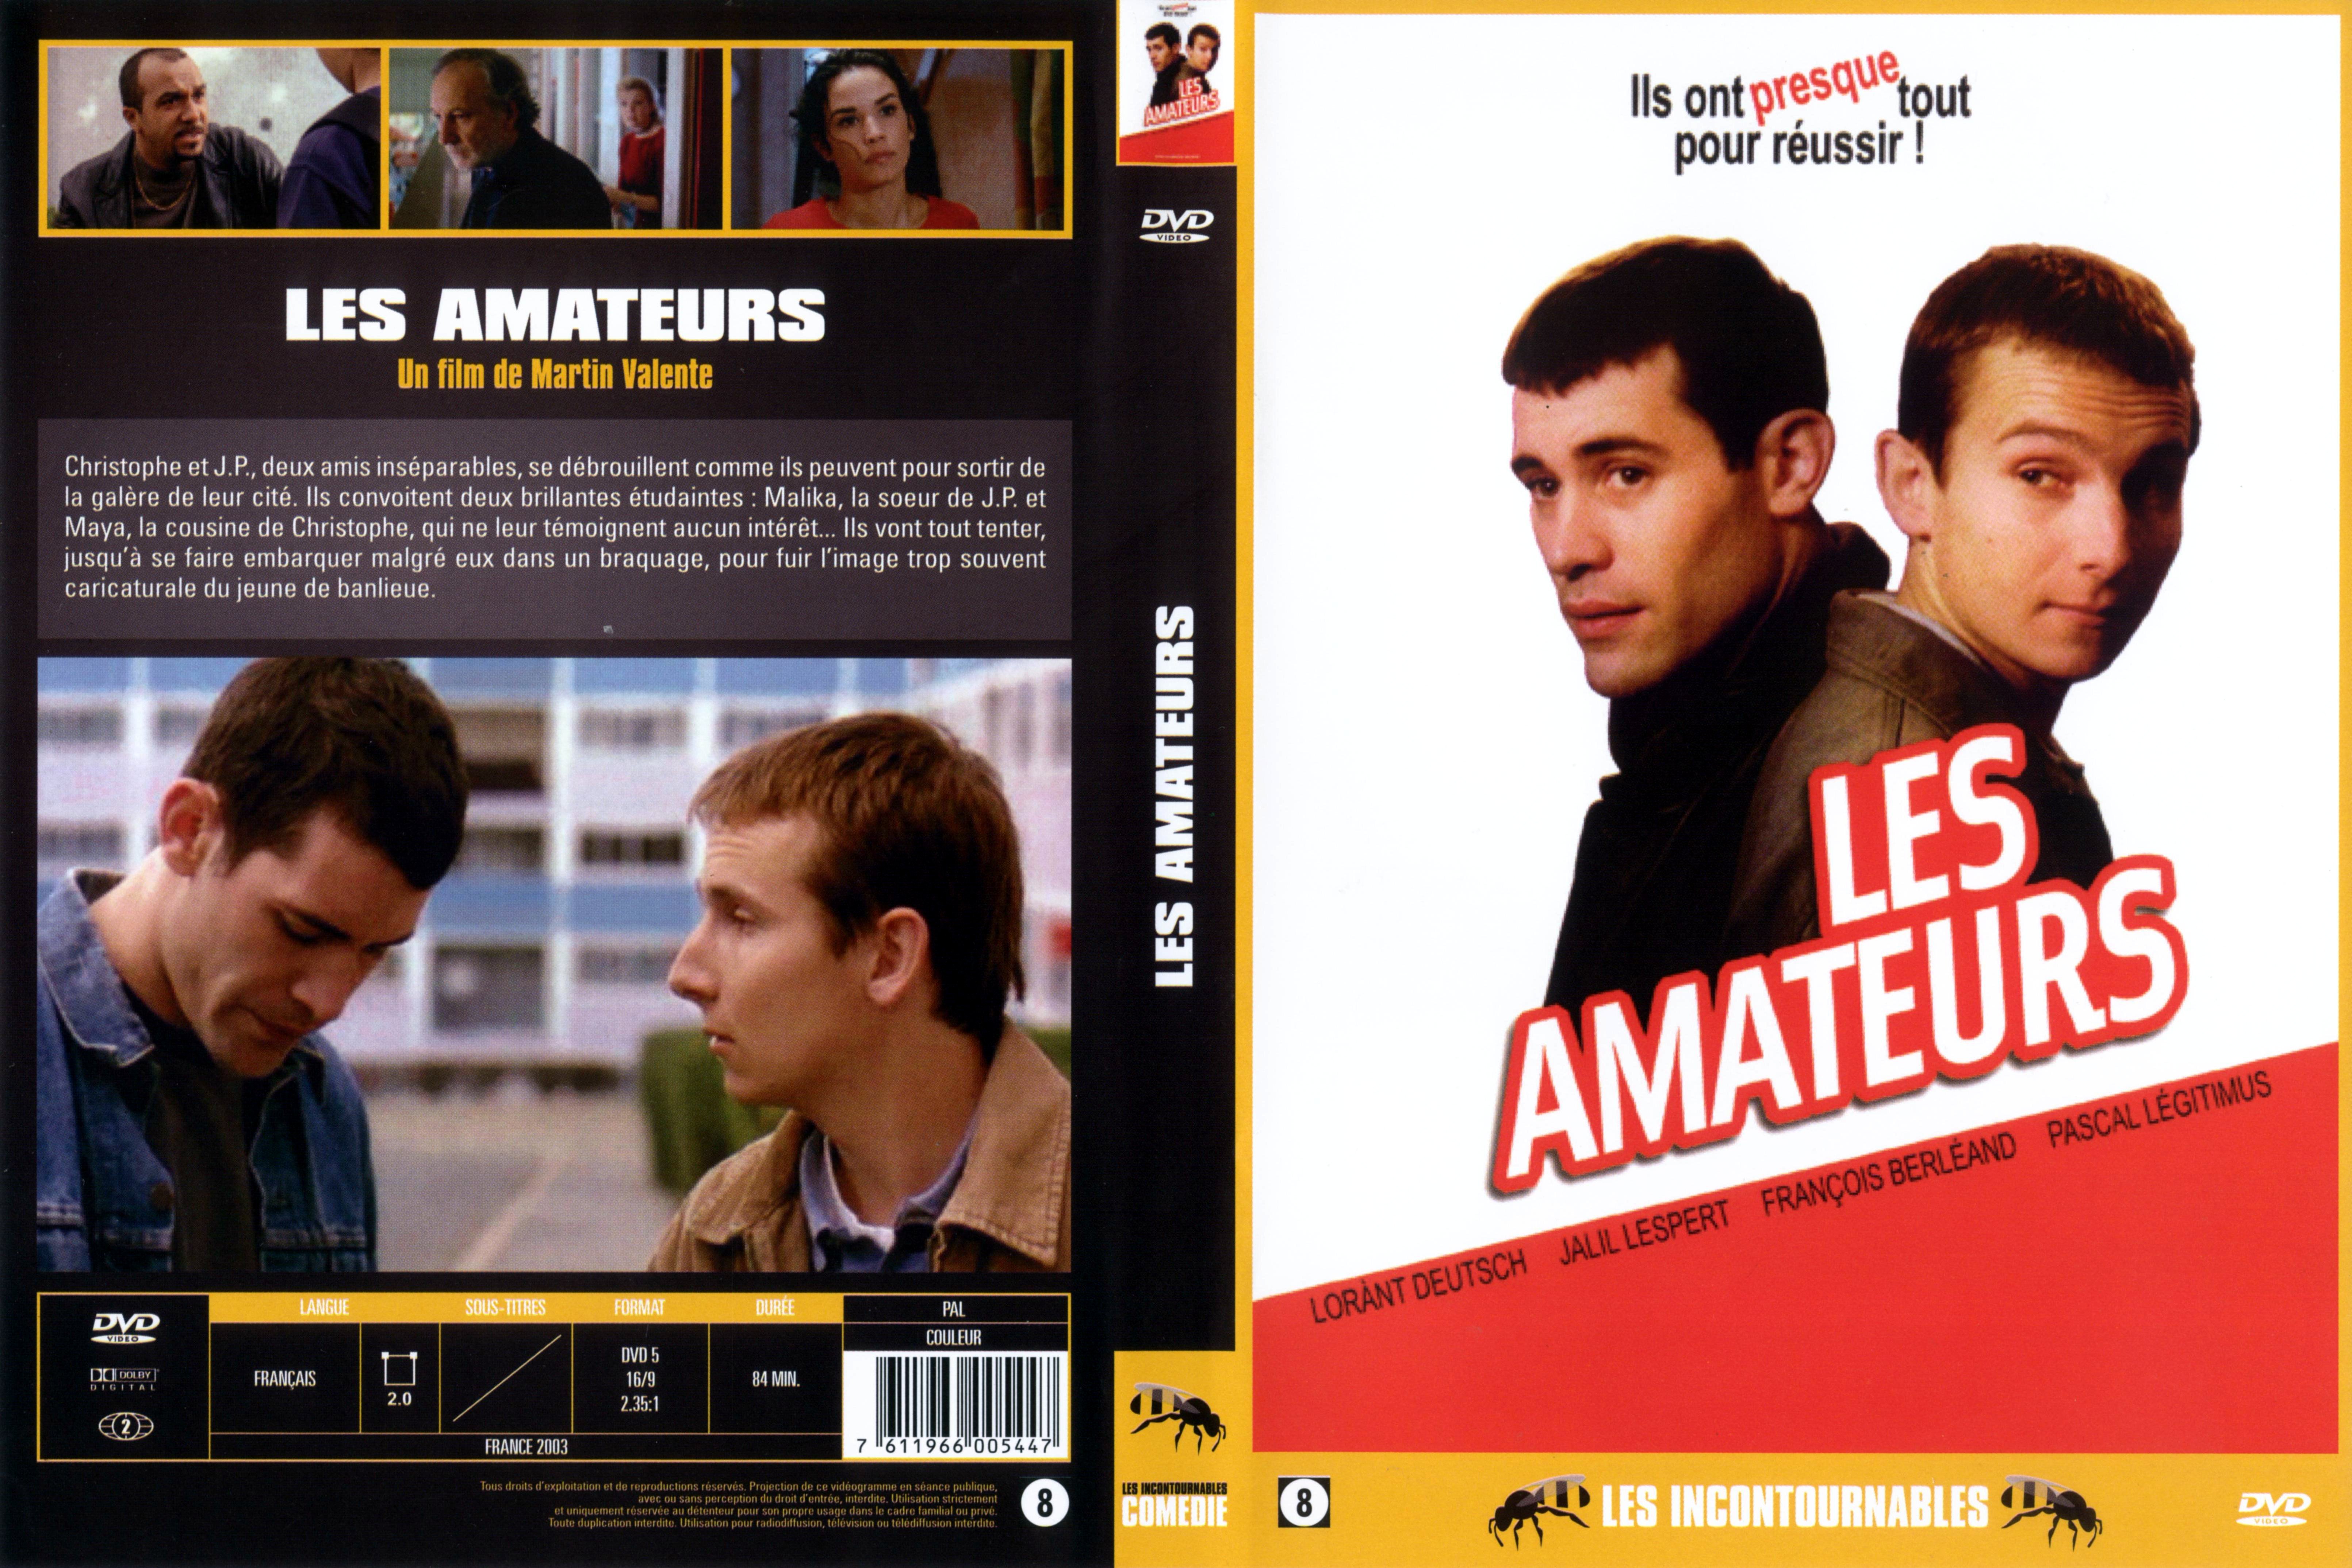 Jaquette DVD Les amateurs v3